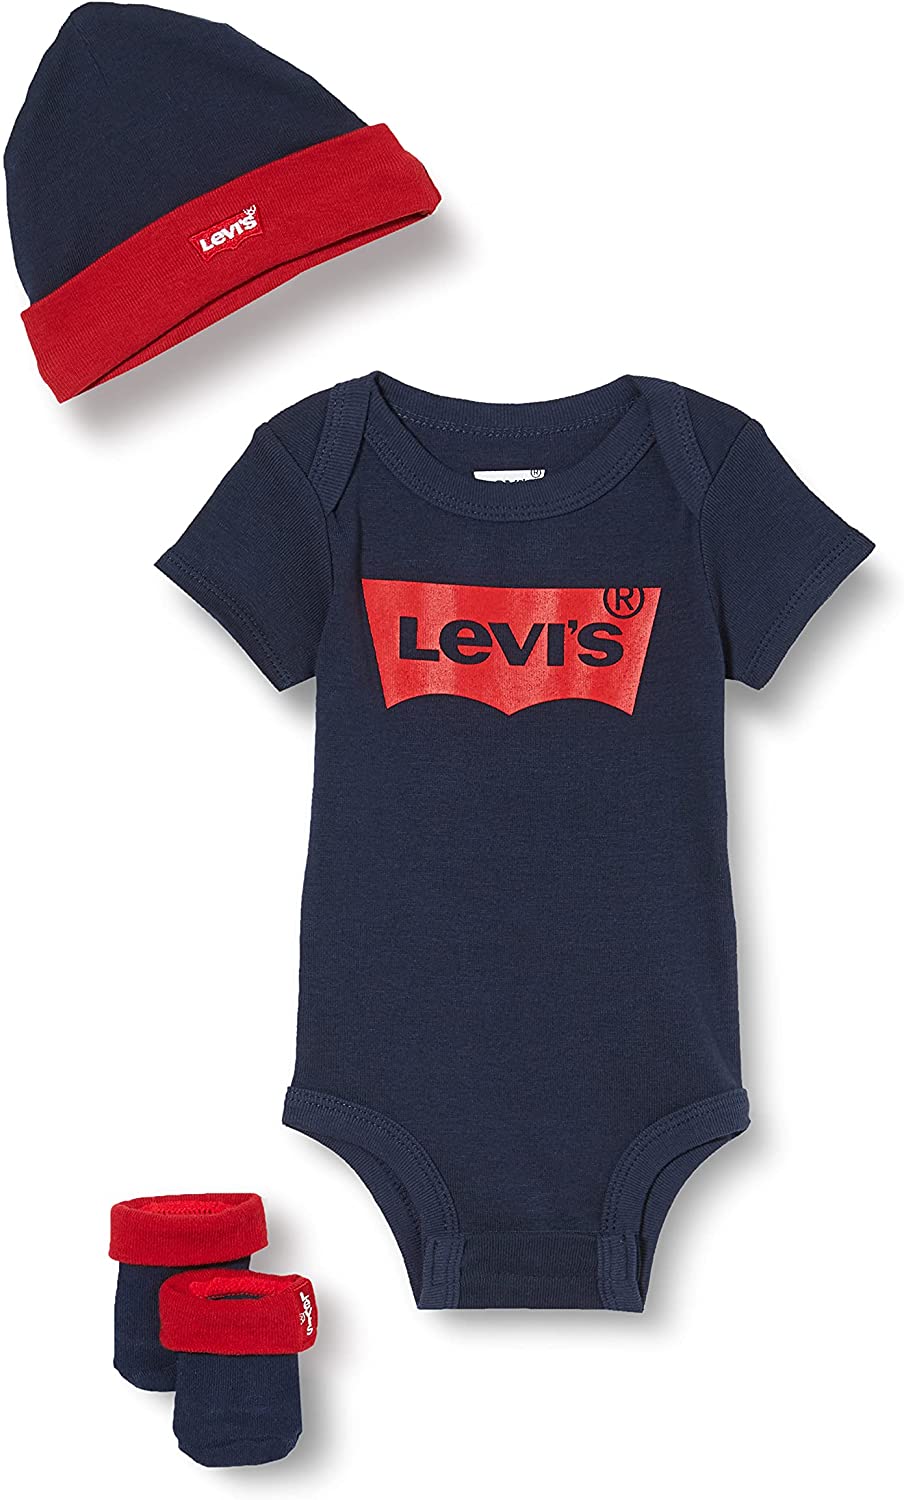 Levi'S Kids Classic Batwing Infant Hat Bodysuit Bootie Set 3Pc Bebé, Blanco, 0 6 meses